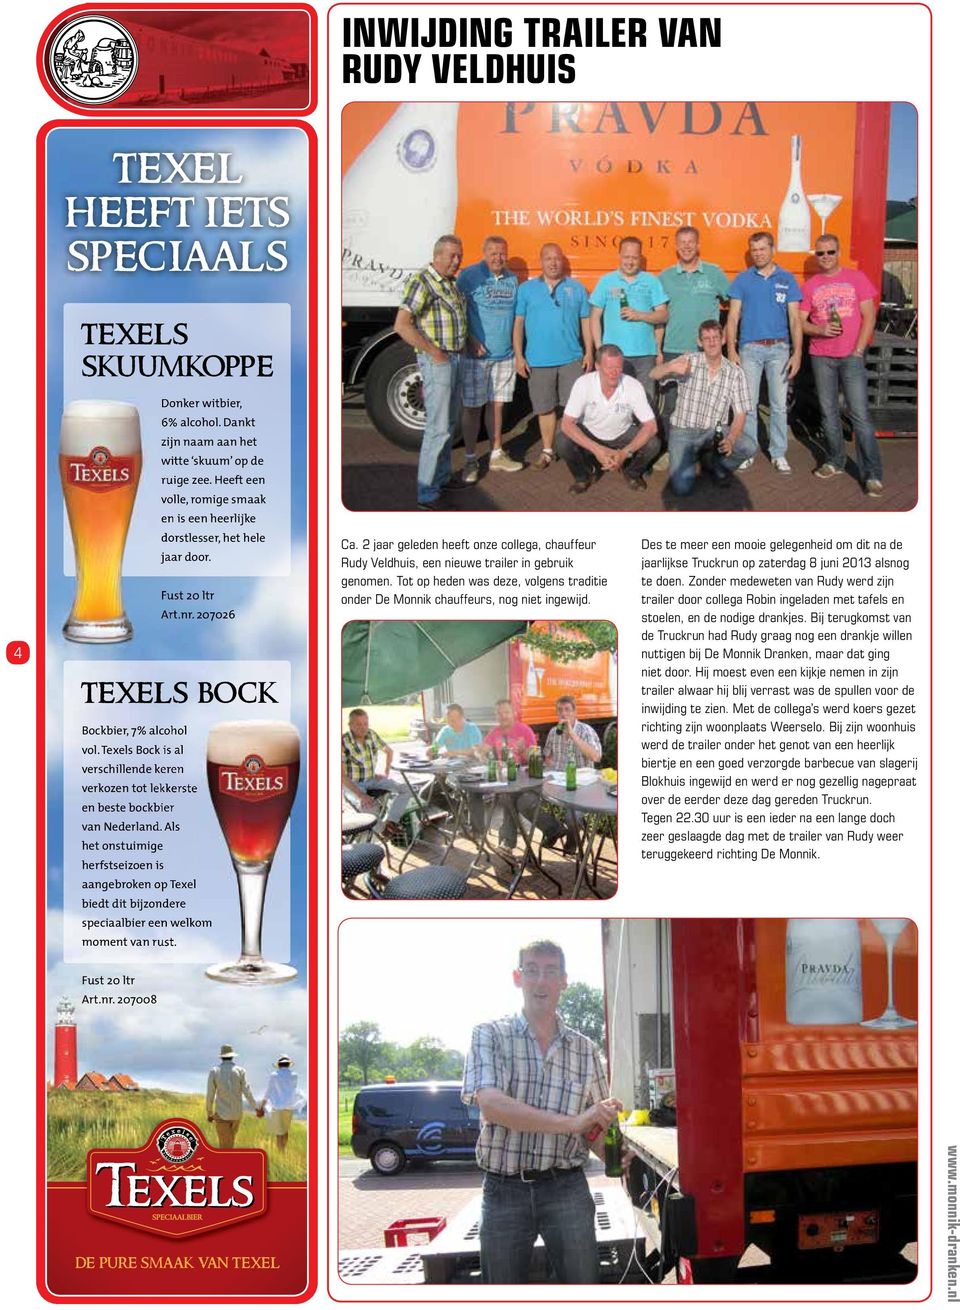 Texels Bock is al verschillende keren verkozen tot lekkerste en beste bockbier van Nederland.